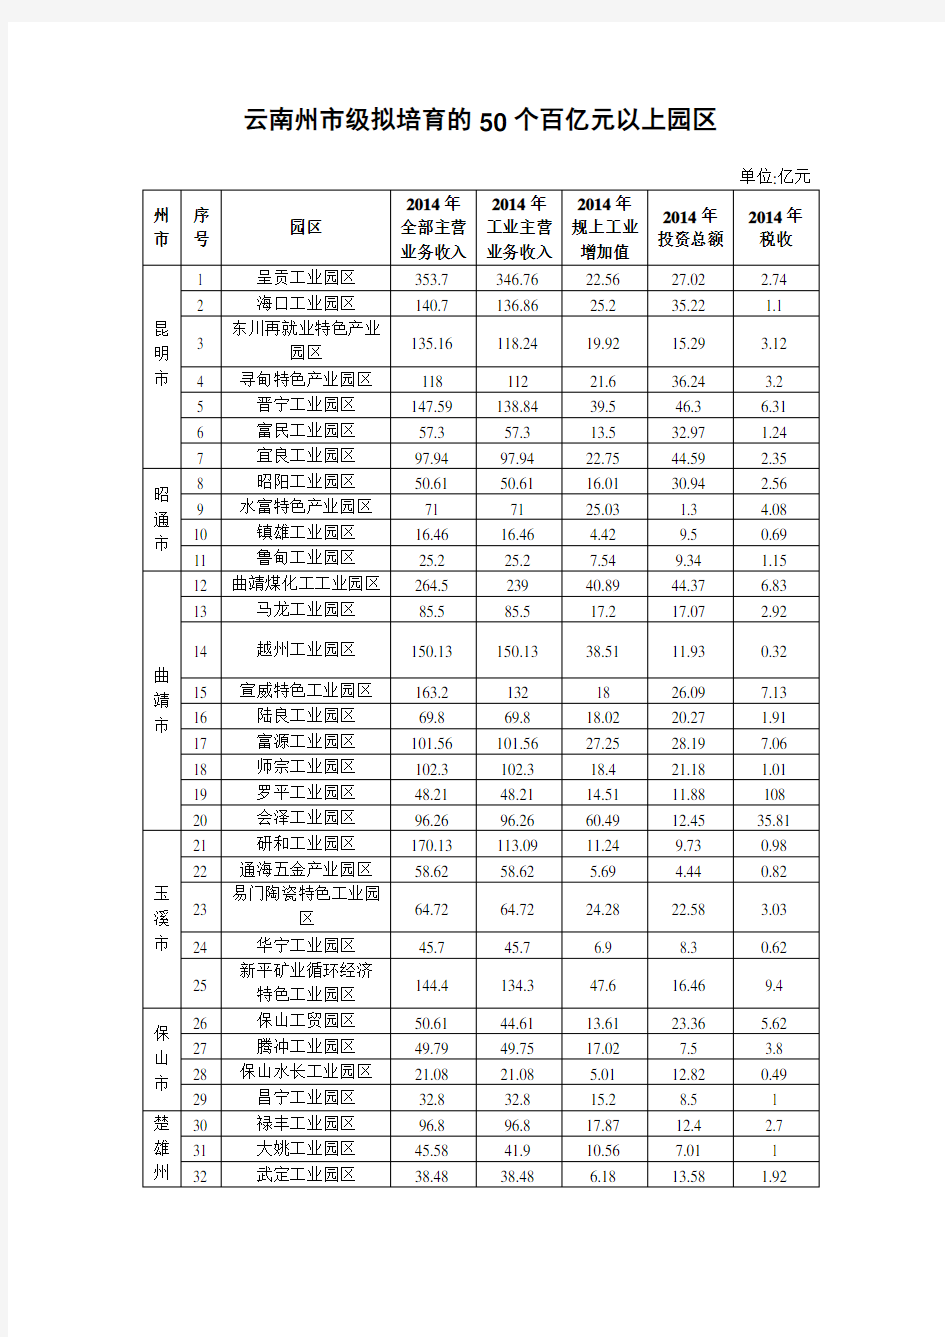 云南省拟培育的10+50个重点工业园区名录